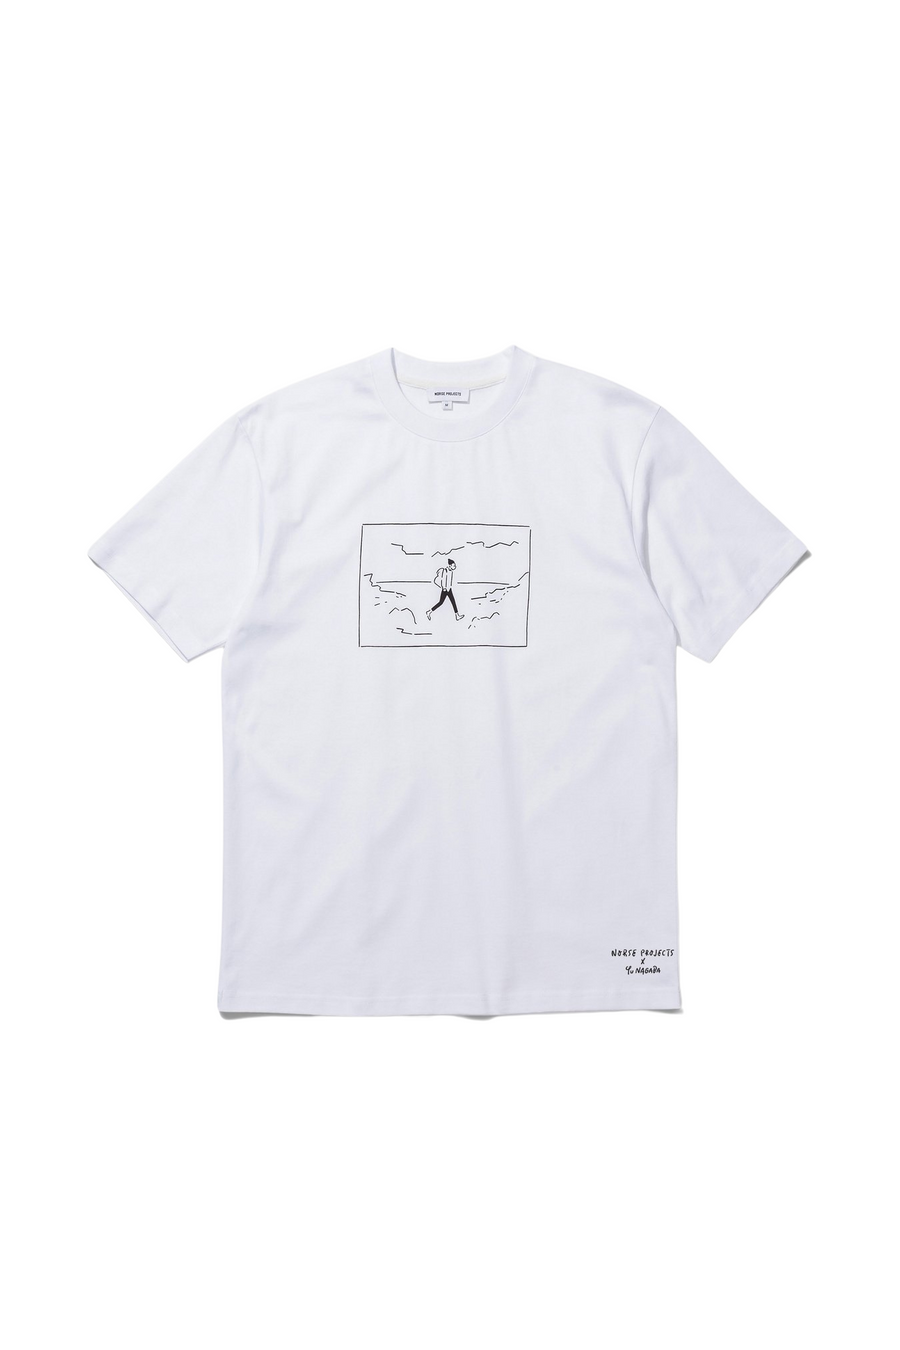 Johannes Norse x Yu Nagaba T-shirt White